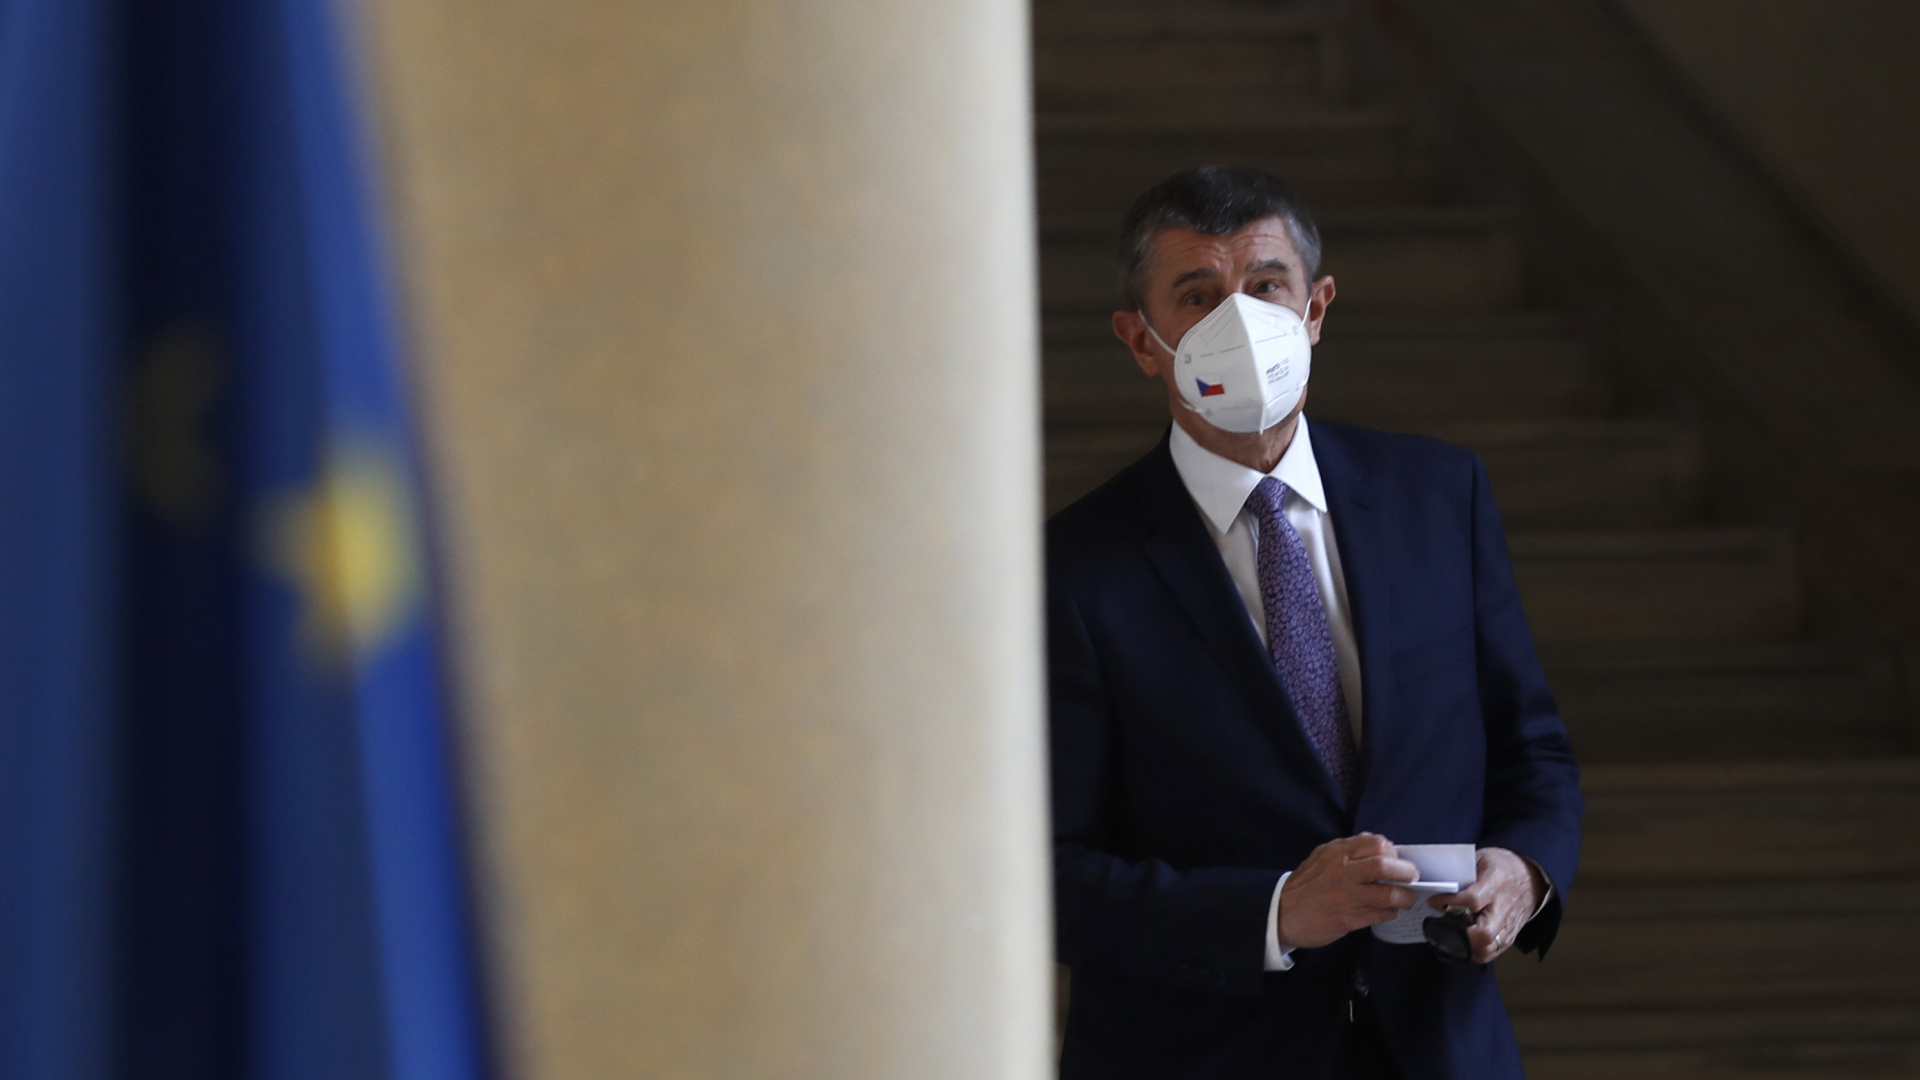 Tschechiens Ministerpräsident Babis mit Mundschutz | AP